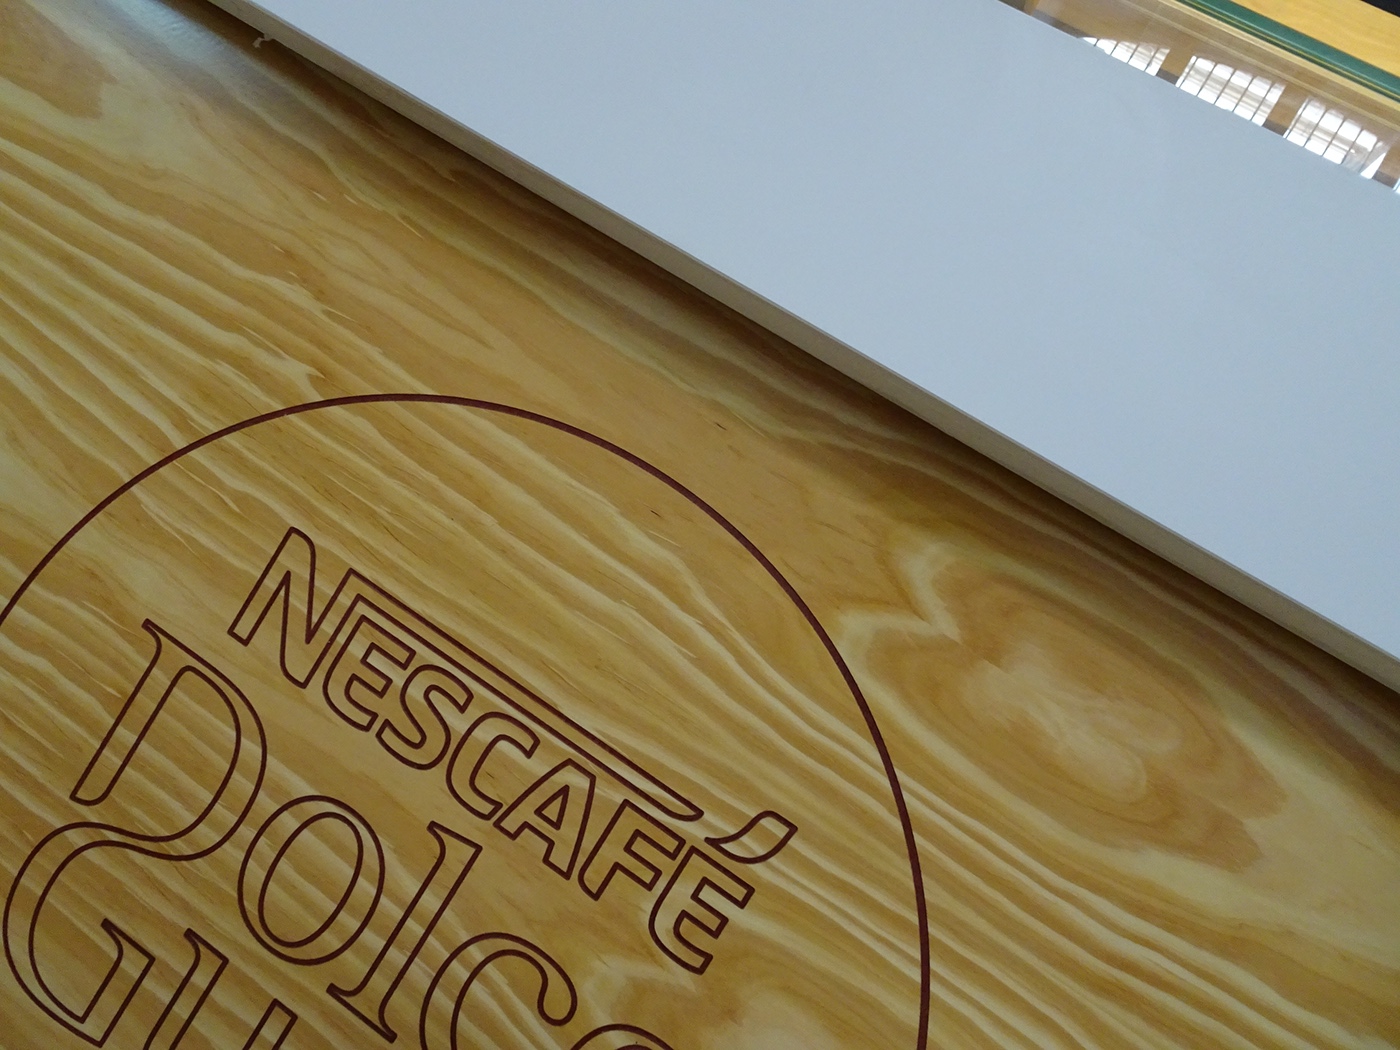 coffe nescafe Dolce Gusto interior design 